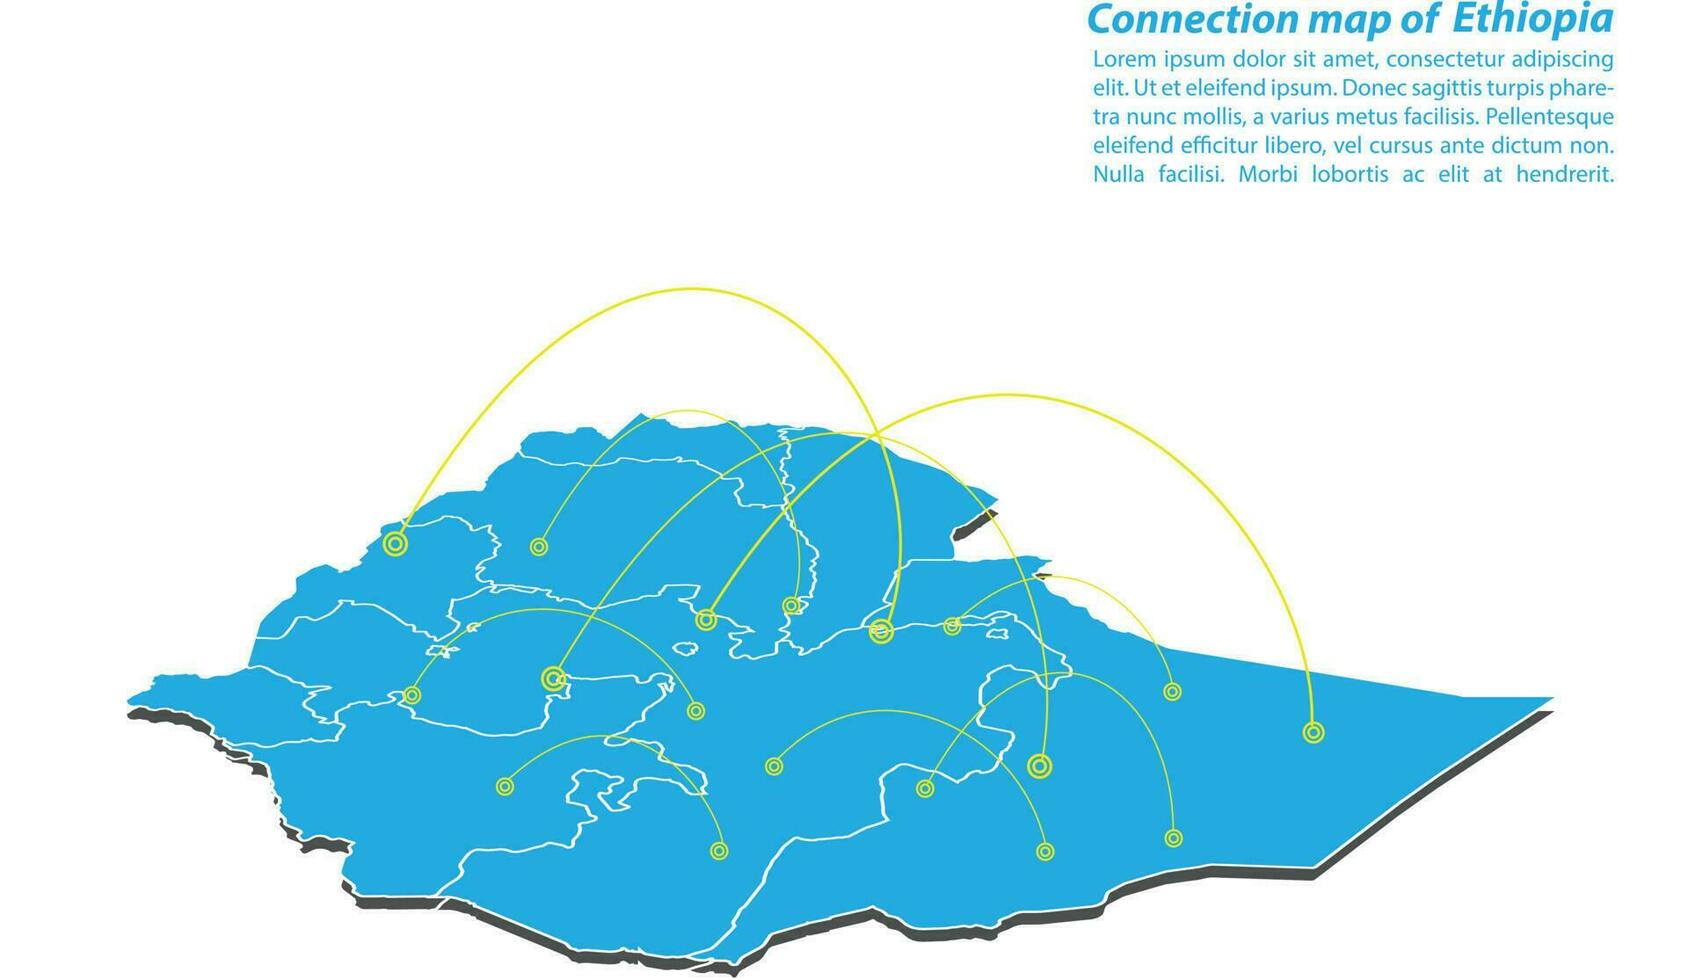 moderno di Etiopia carta geografica connessioni Rete disegno, migliore Internet concetto di Etiopia carta geografica attività commerciale a partire dal concetti serie, carta geografica punto e linea composizione. Infografica carta geografica. vettore illustrazione.